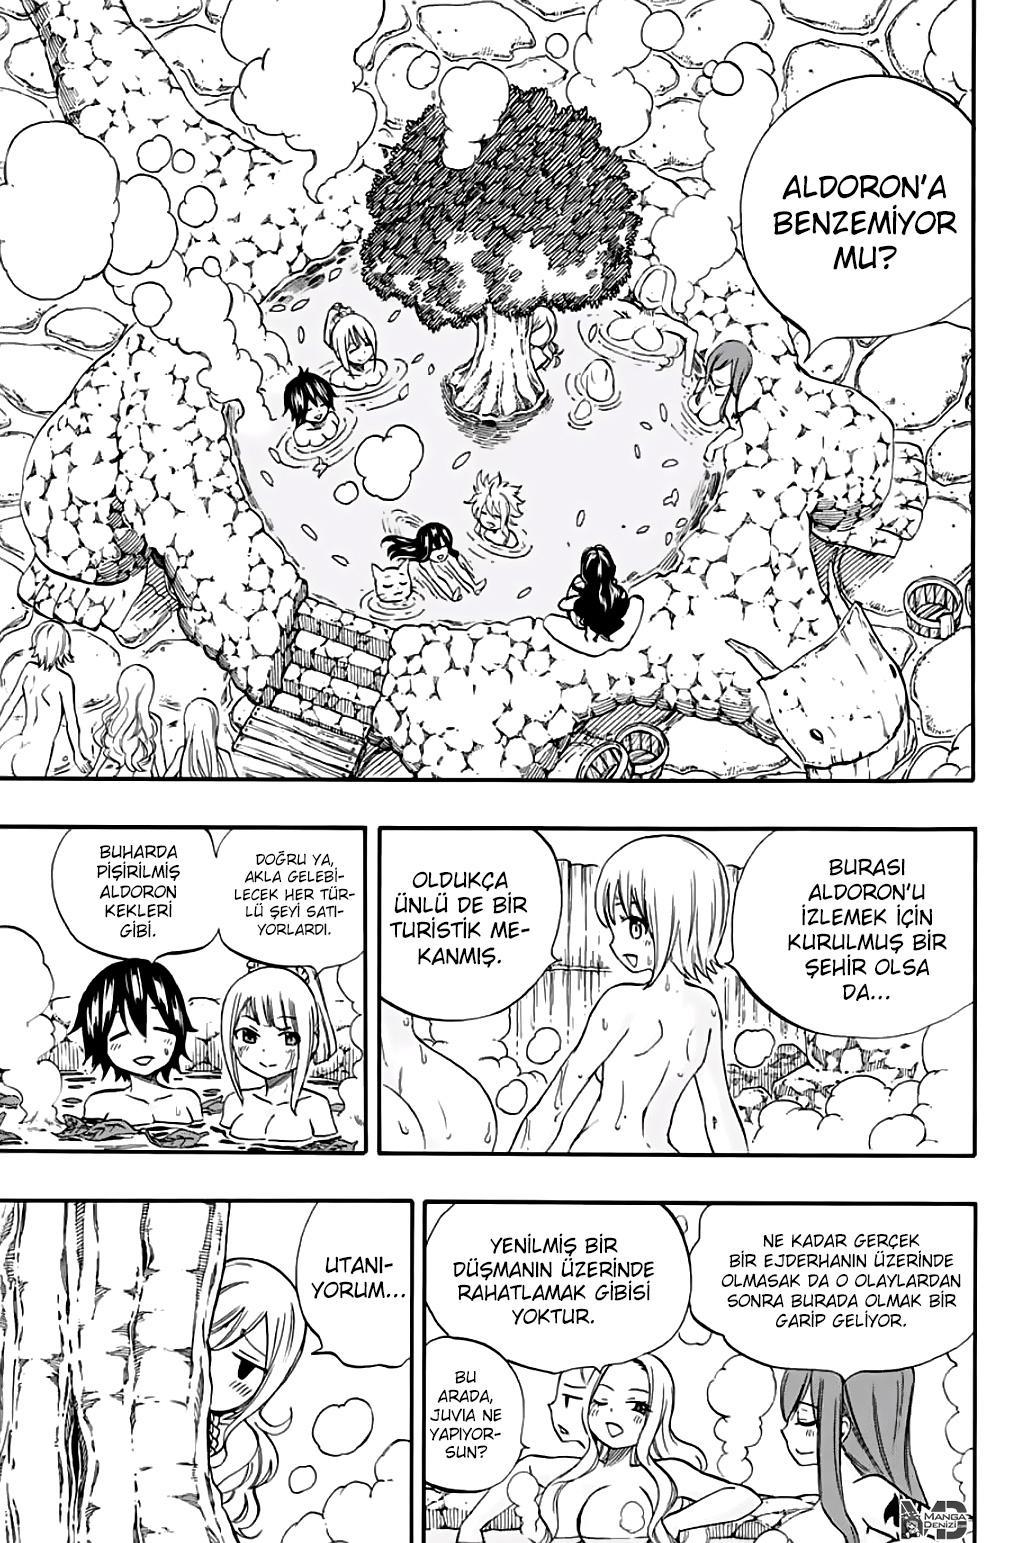 Fairy Tail: 100 Years Quest mangasının 064 bölümünün 4. sayfasını okuyorsunuz.